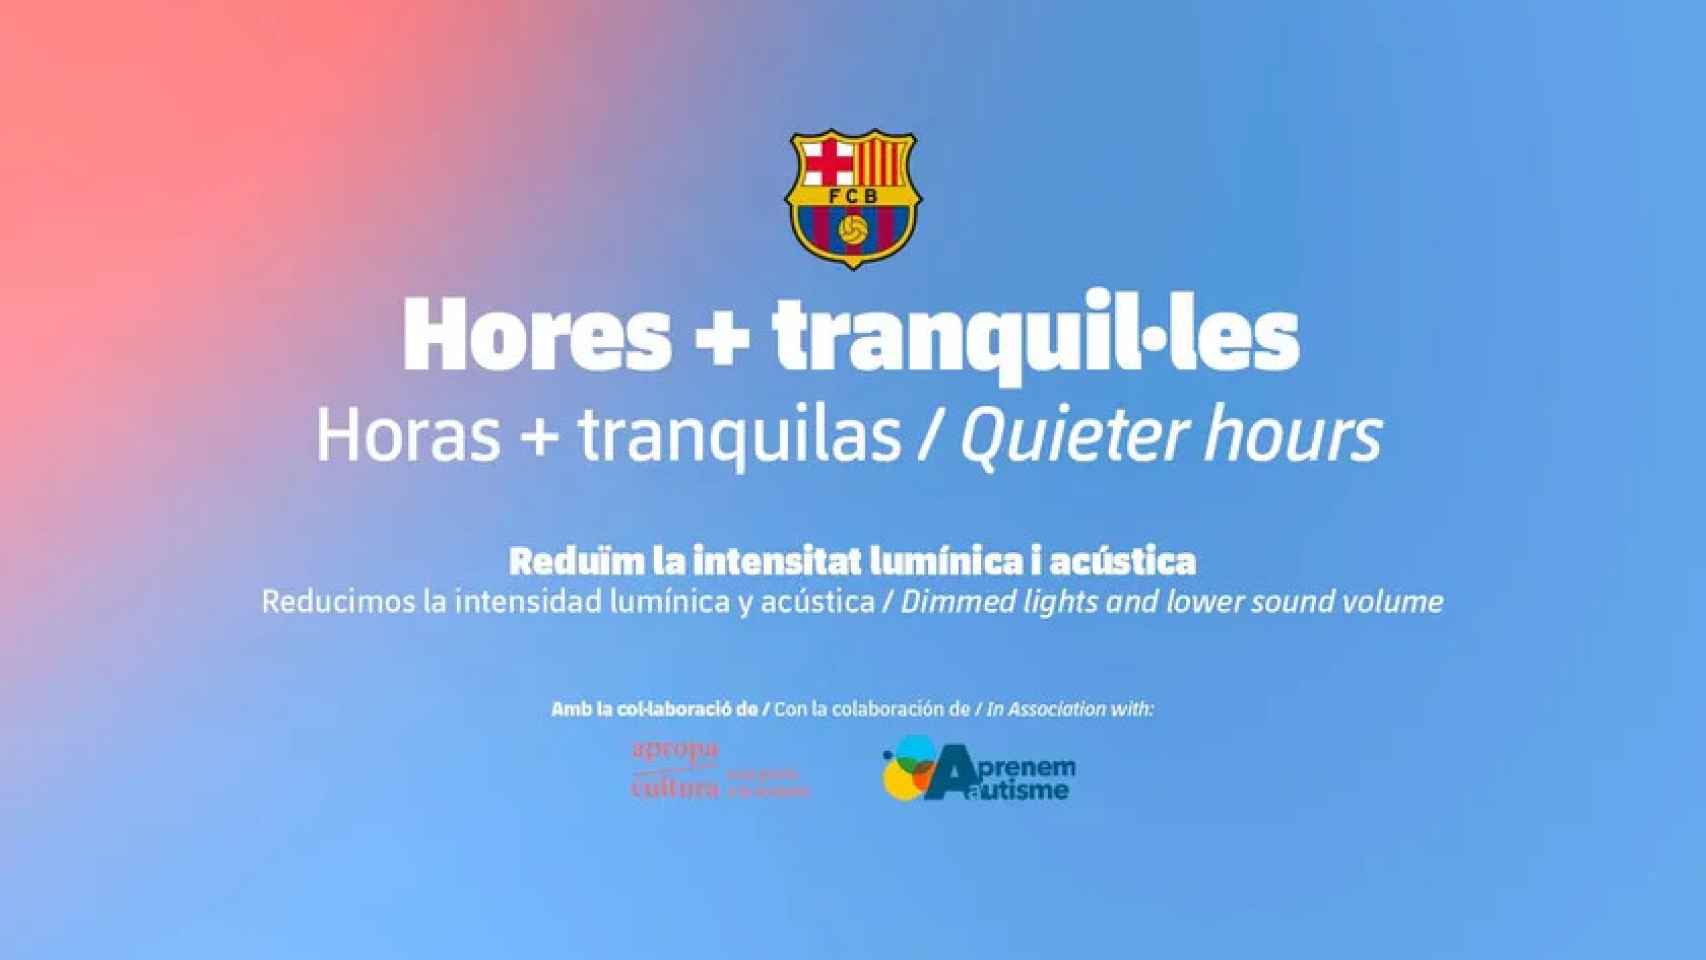 El Barça lanza la iniciativa 'Hores + tranquil·les', para las personas con autismo